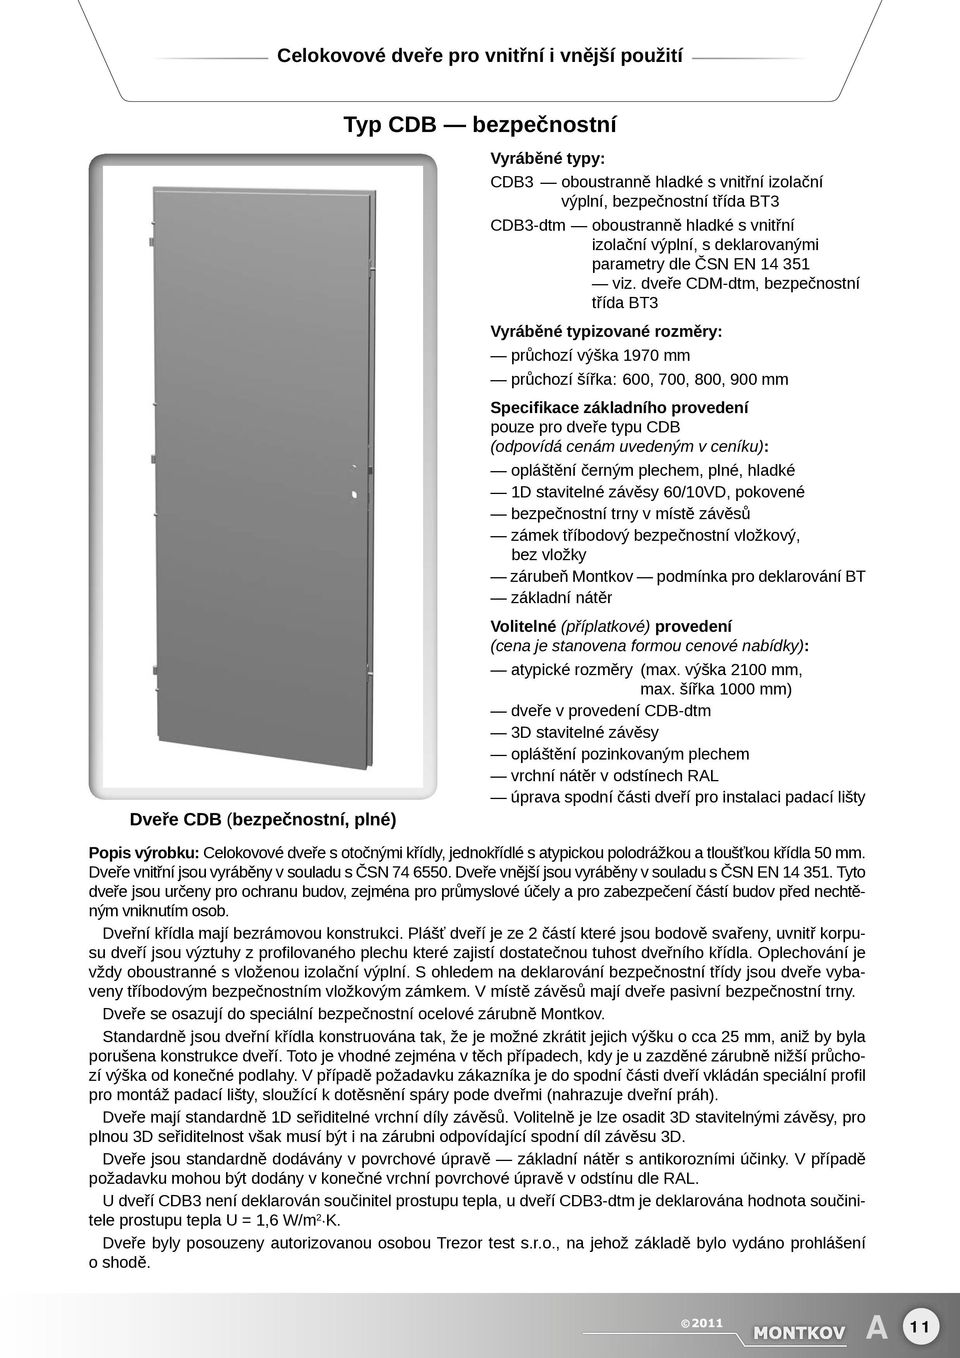 dveře CDM-dtm, bezpečnostní třída BT3 průchozí šířka: 600, 700, 800, 900 mm Specifikace základního provedení pouze pro dveře typu CDB (odpovídá cenám uvedeným v ceníku): opláštění černým plechem,